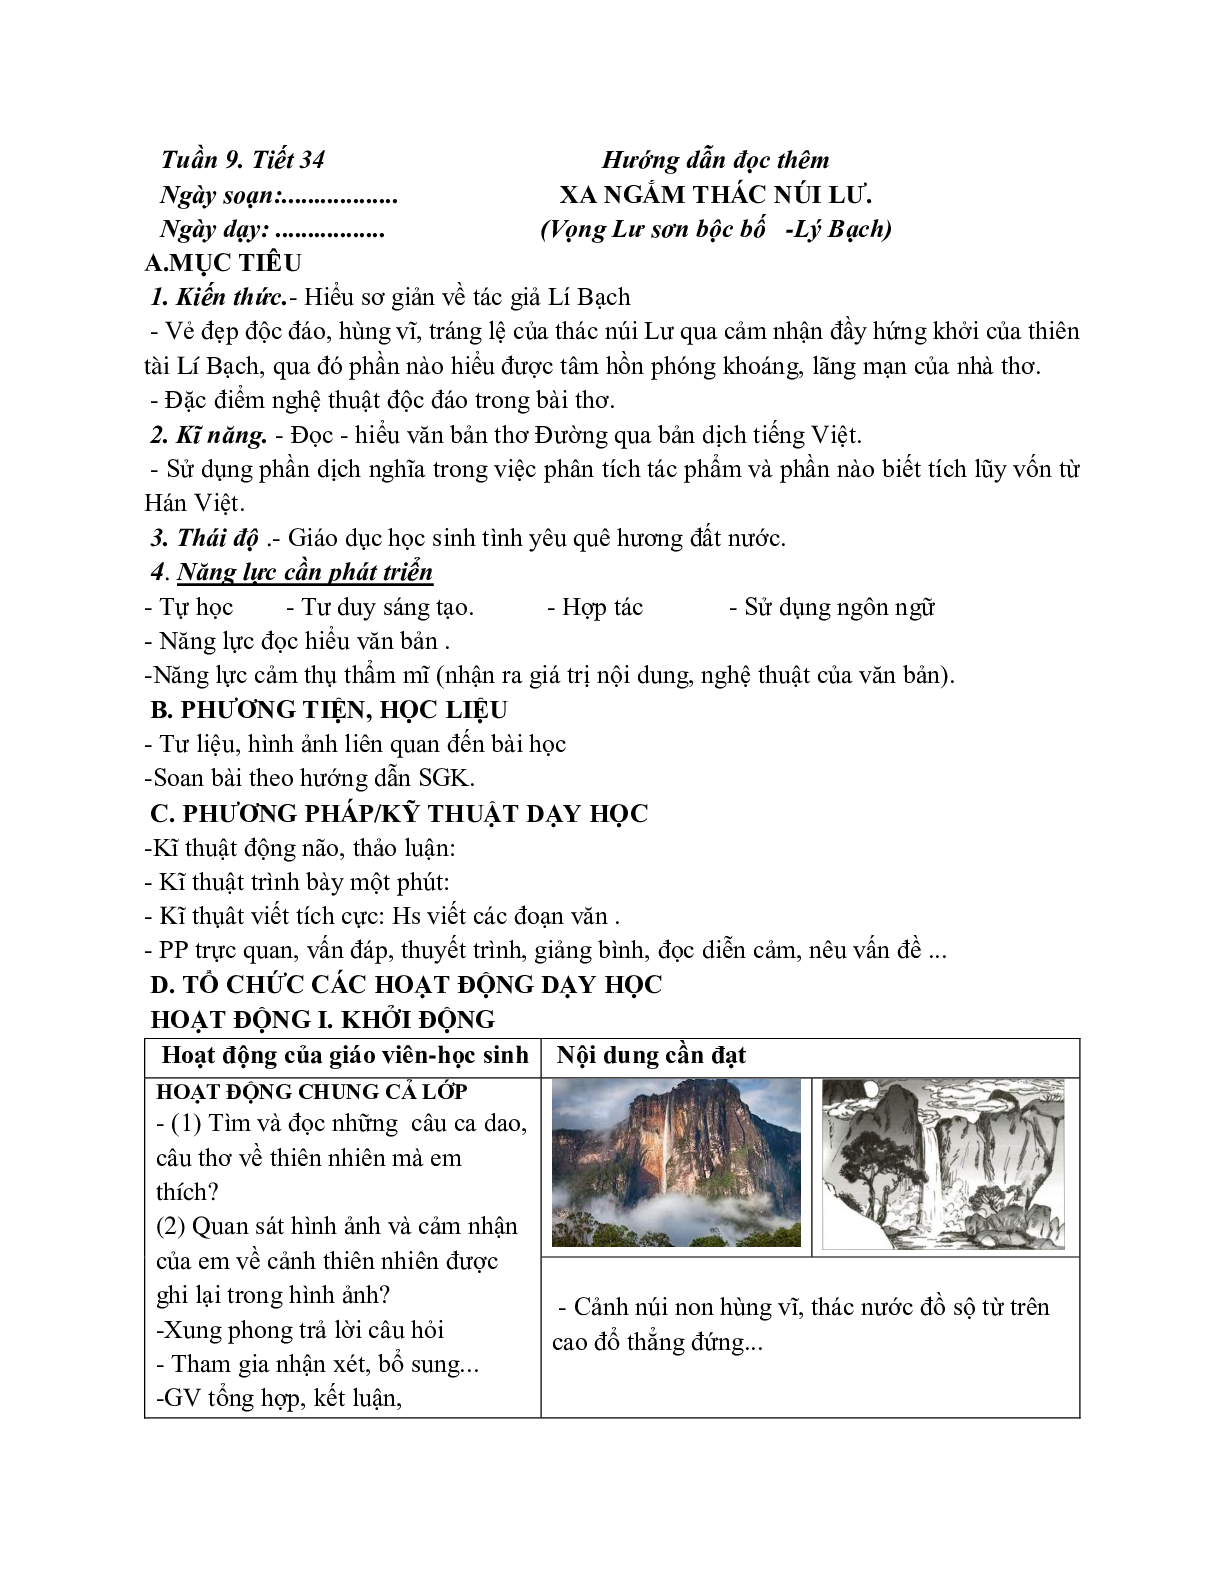 Giáo án ngữ văn lớp 7 Tuần 9 Tiết 34: Xa ngắm thác núi lư mới nhất (trang 1)